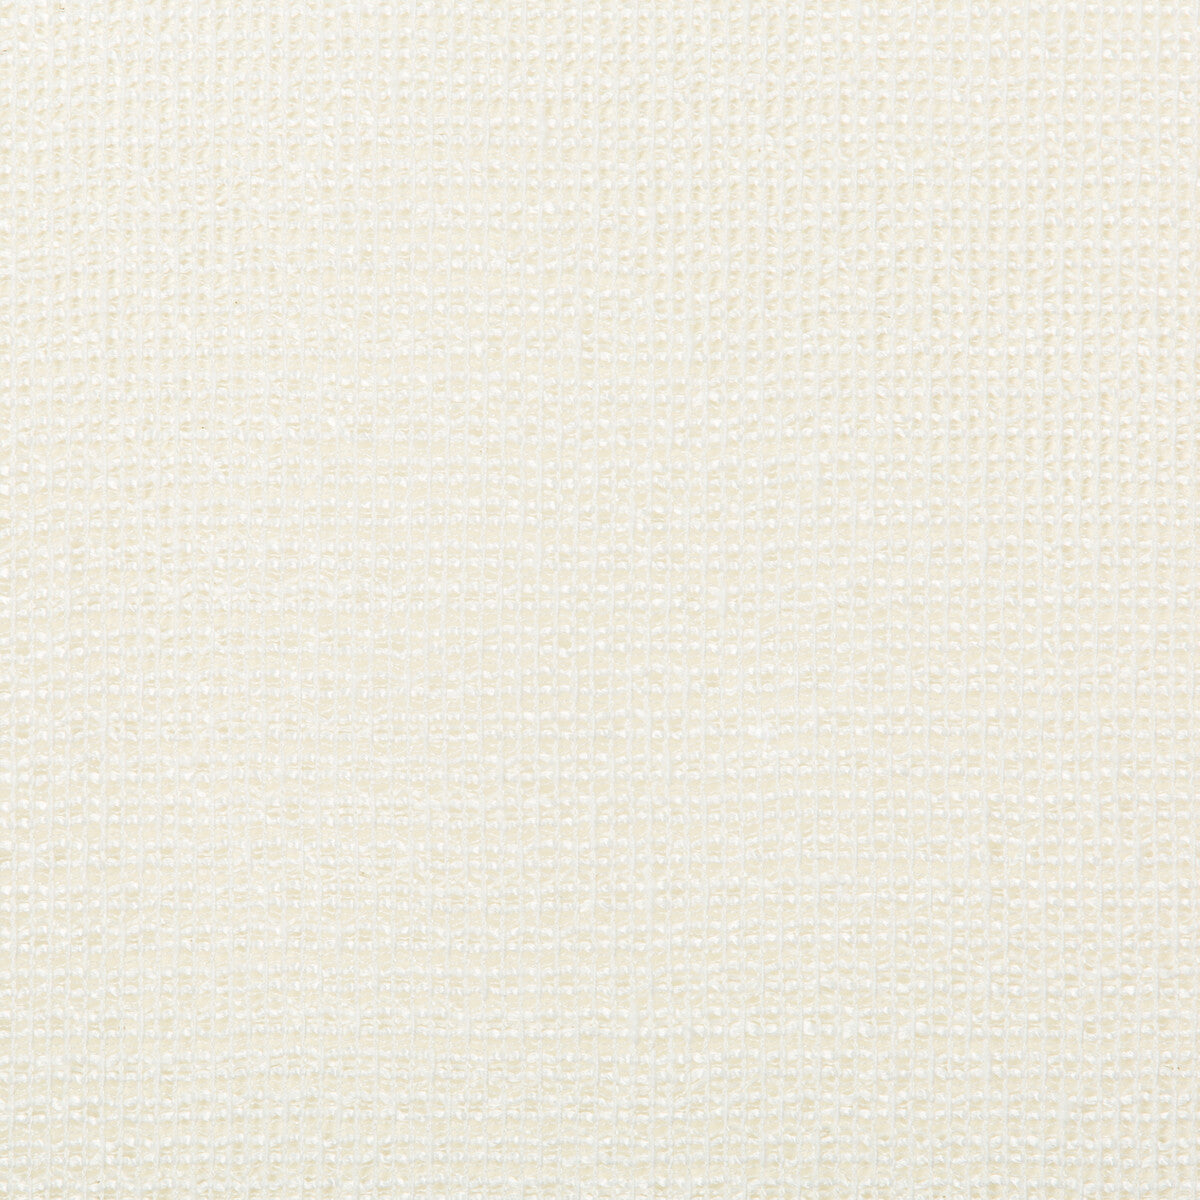 Kravet Basics fabric in 4676-1 color - pattern 4676.1.0 - by Kravet Basics